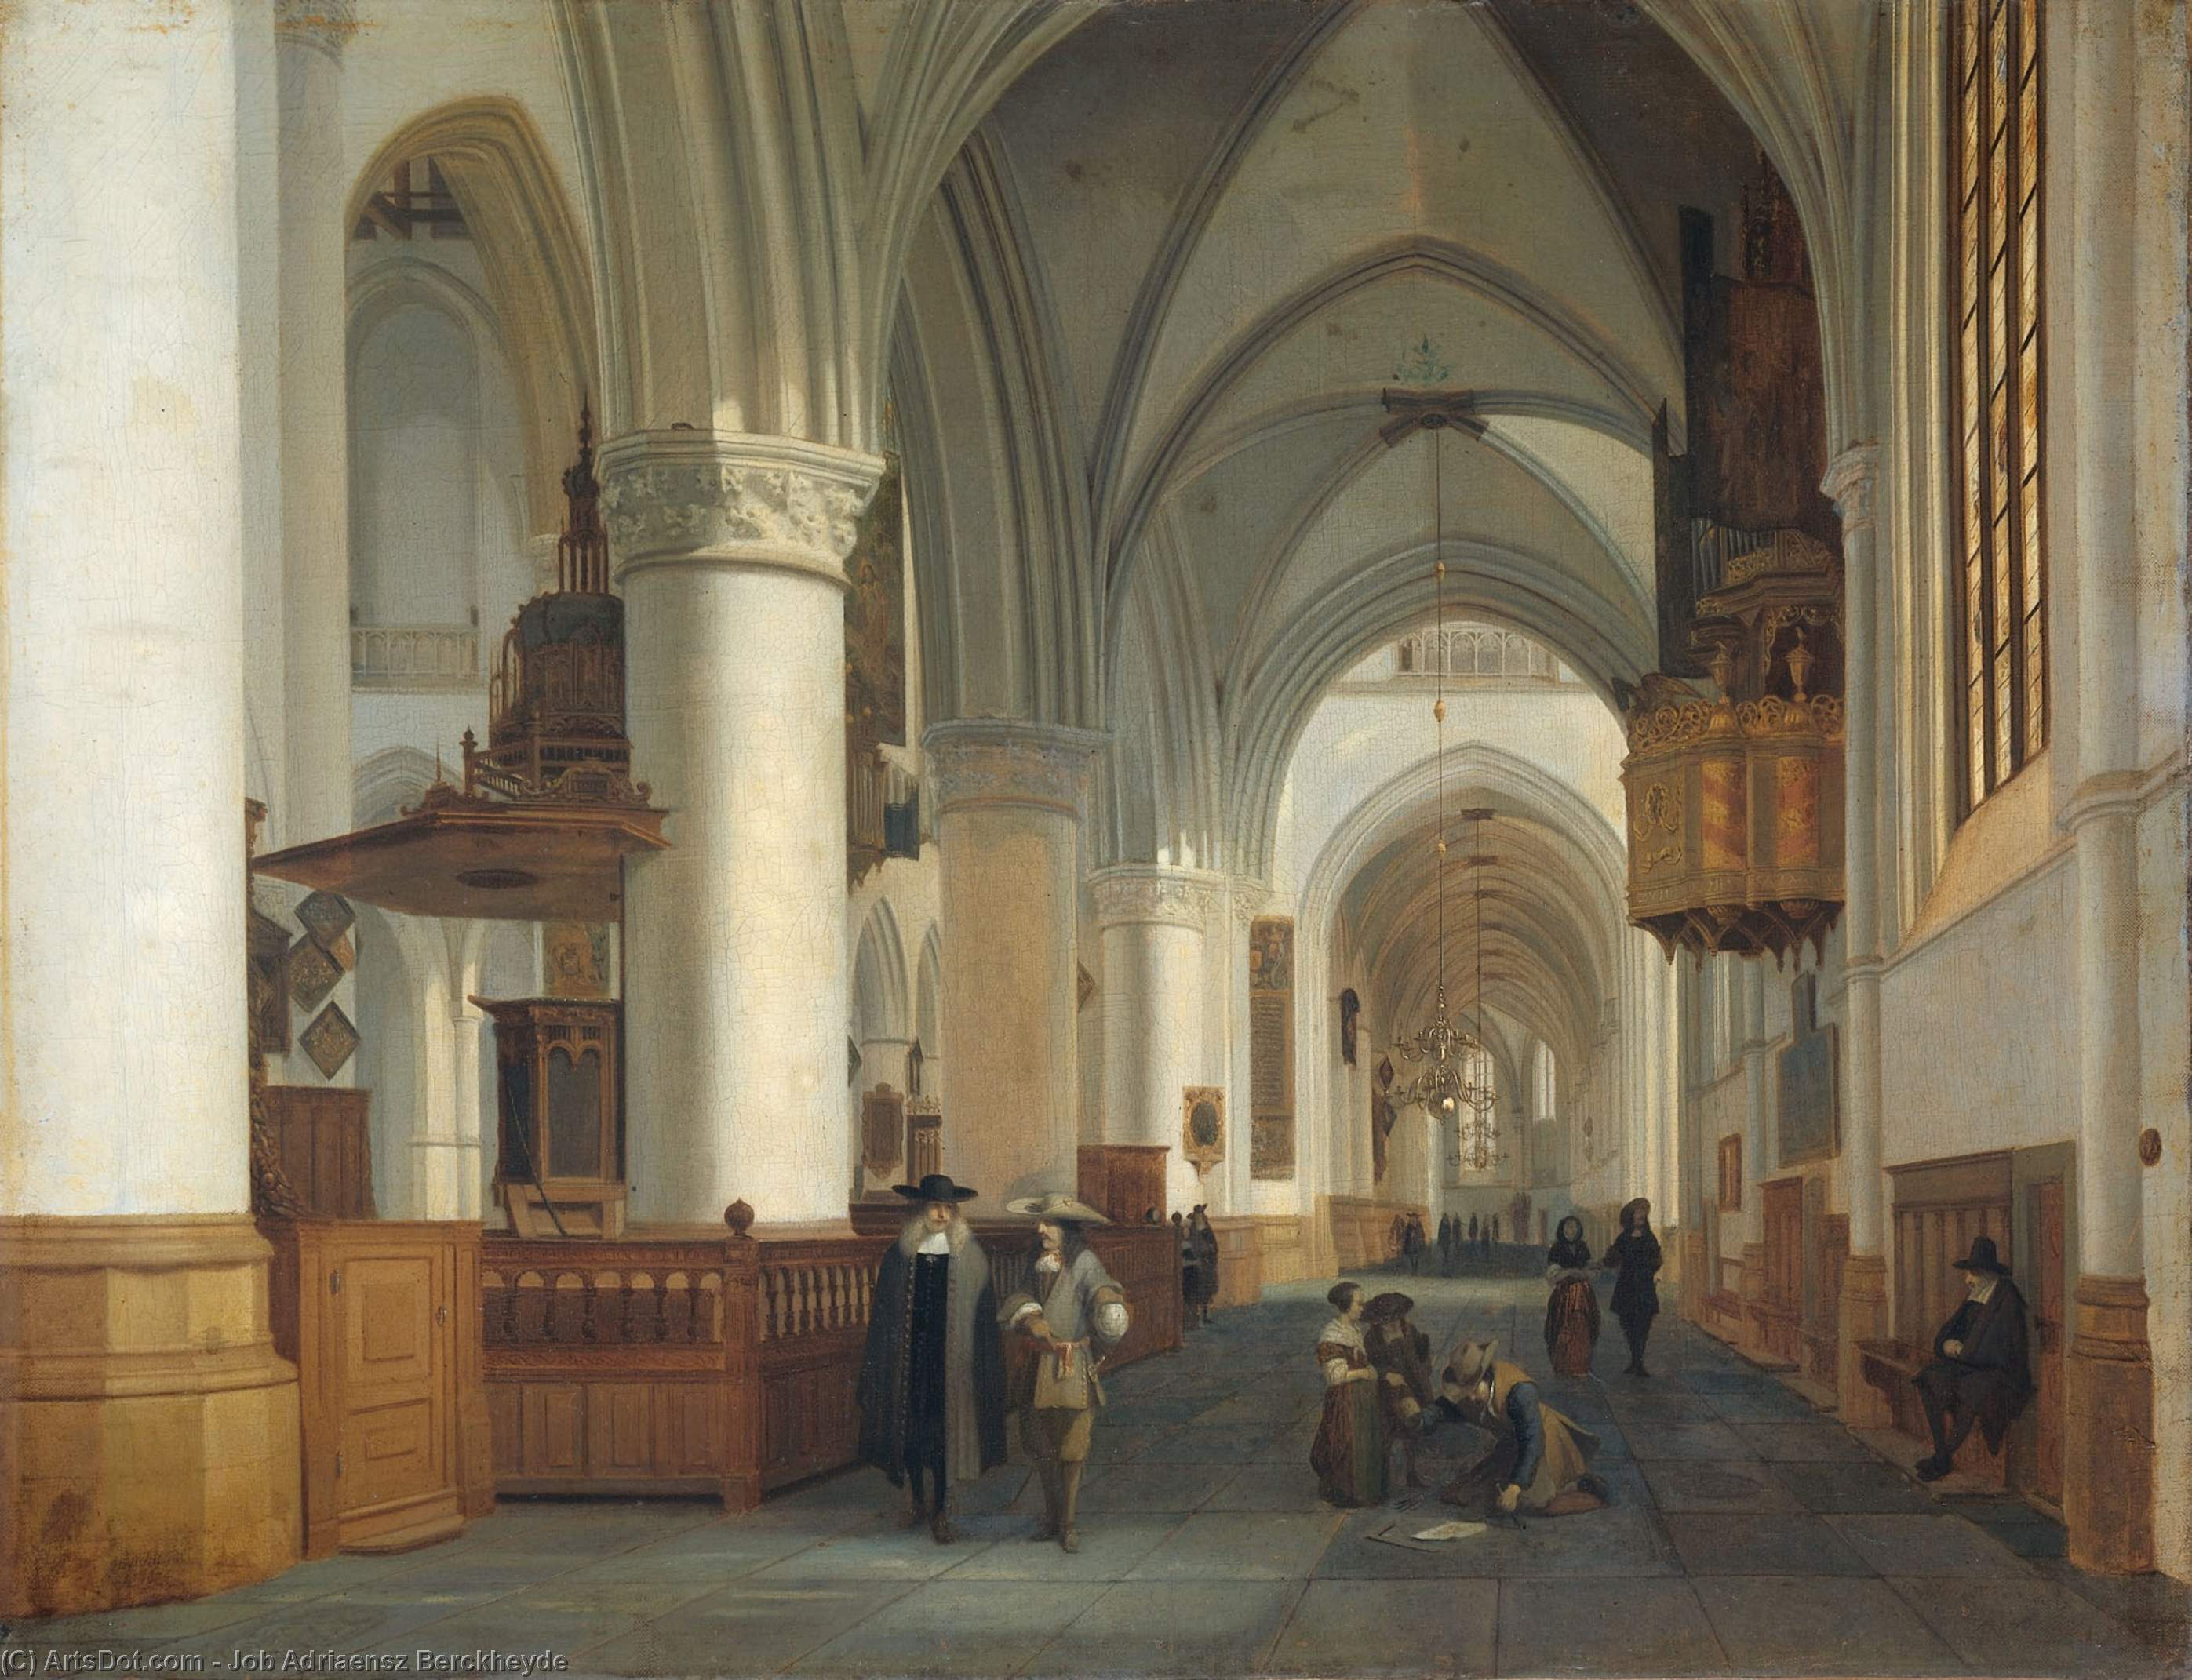 WikiOO.org - Encyclopedia of Fine Arts - Malba, Artwork Job Adriaensz Berckheyde - Interior of the Sint Bavokerk in Haarlem